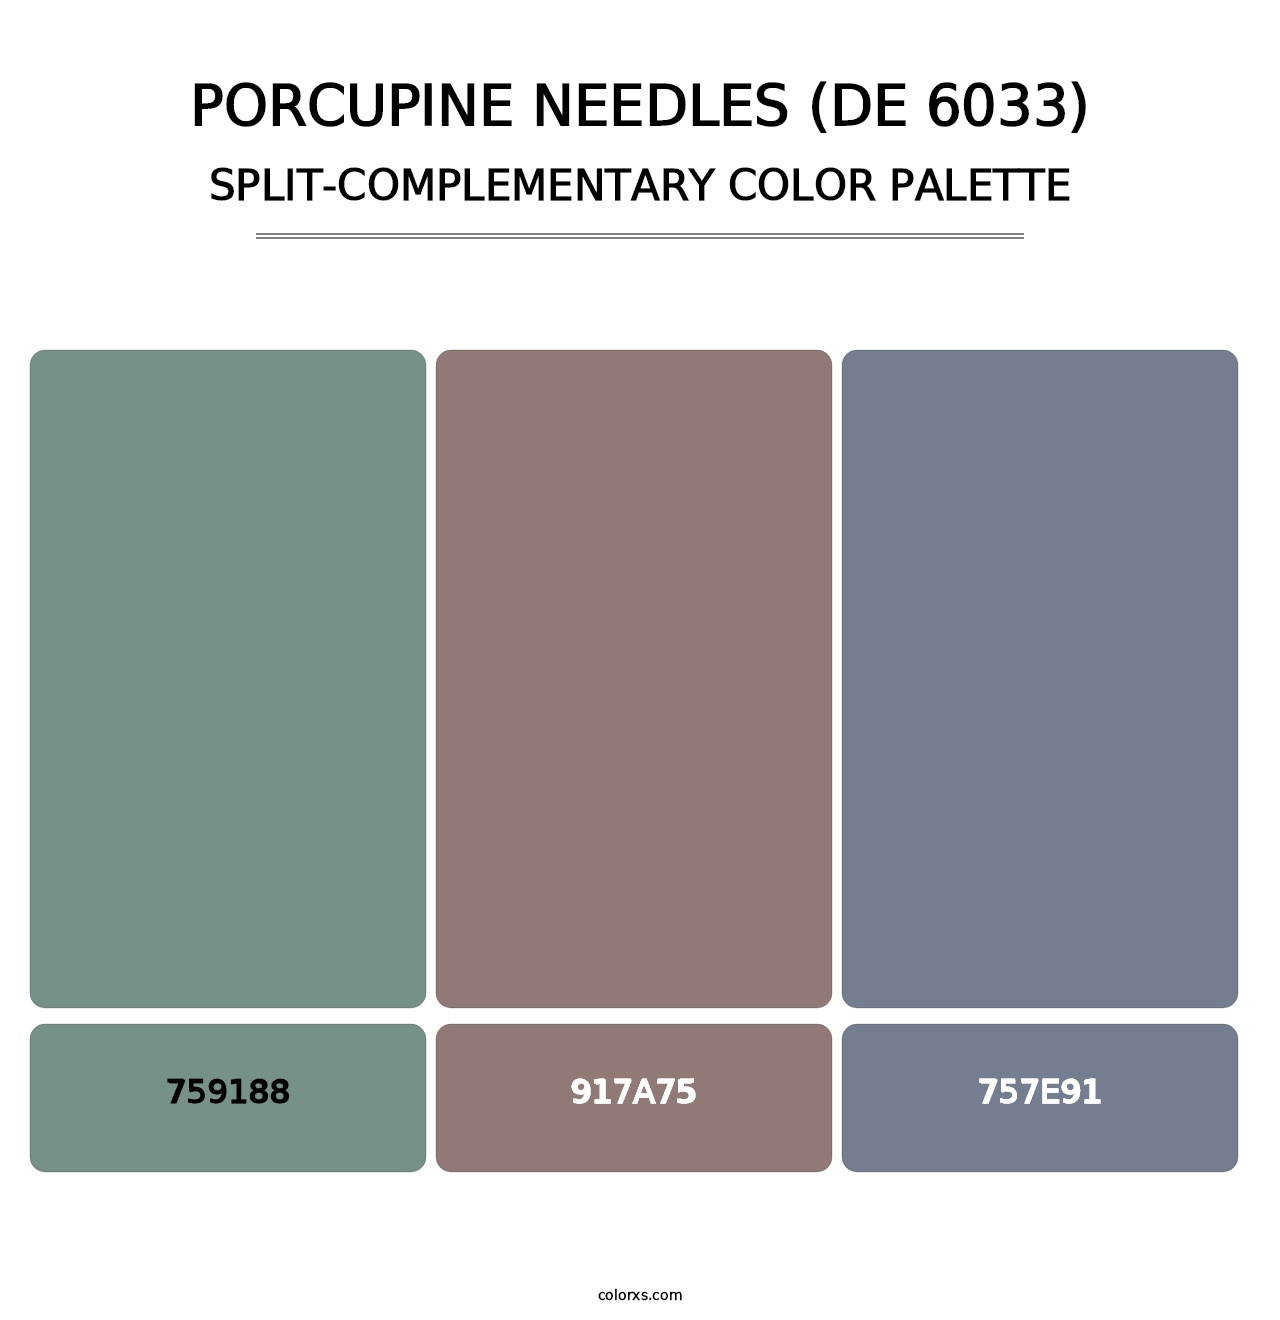 Porcupine Needles (DE 6033) - Split-Complementary Color Palette